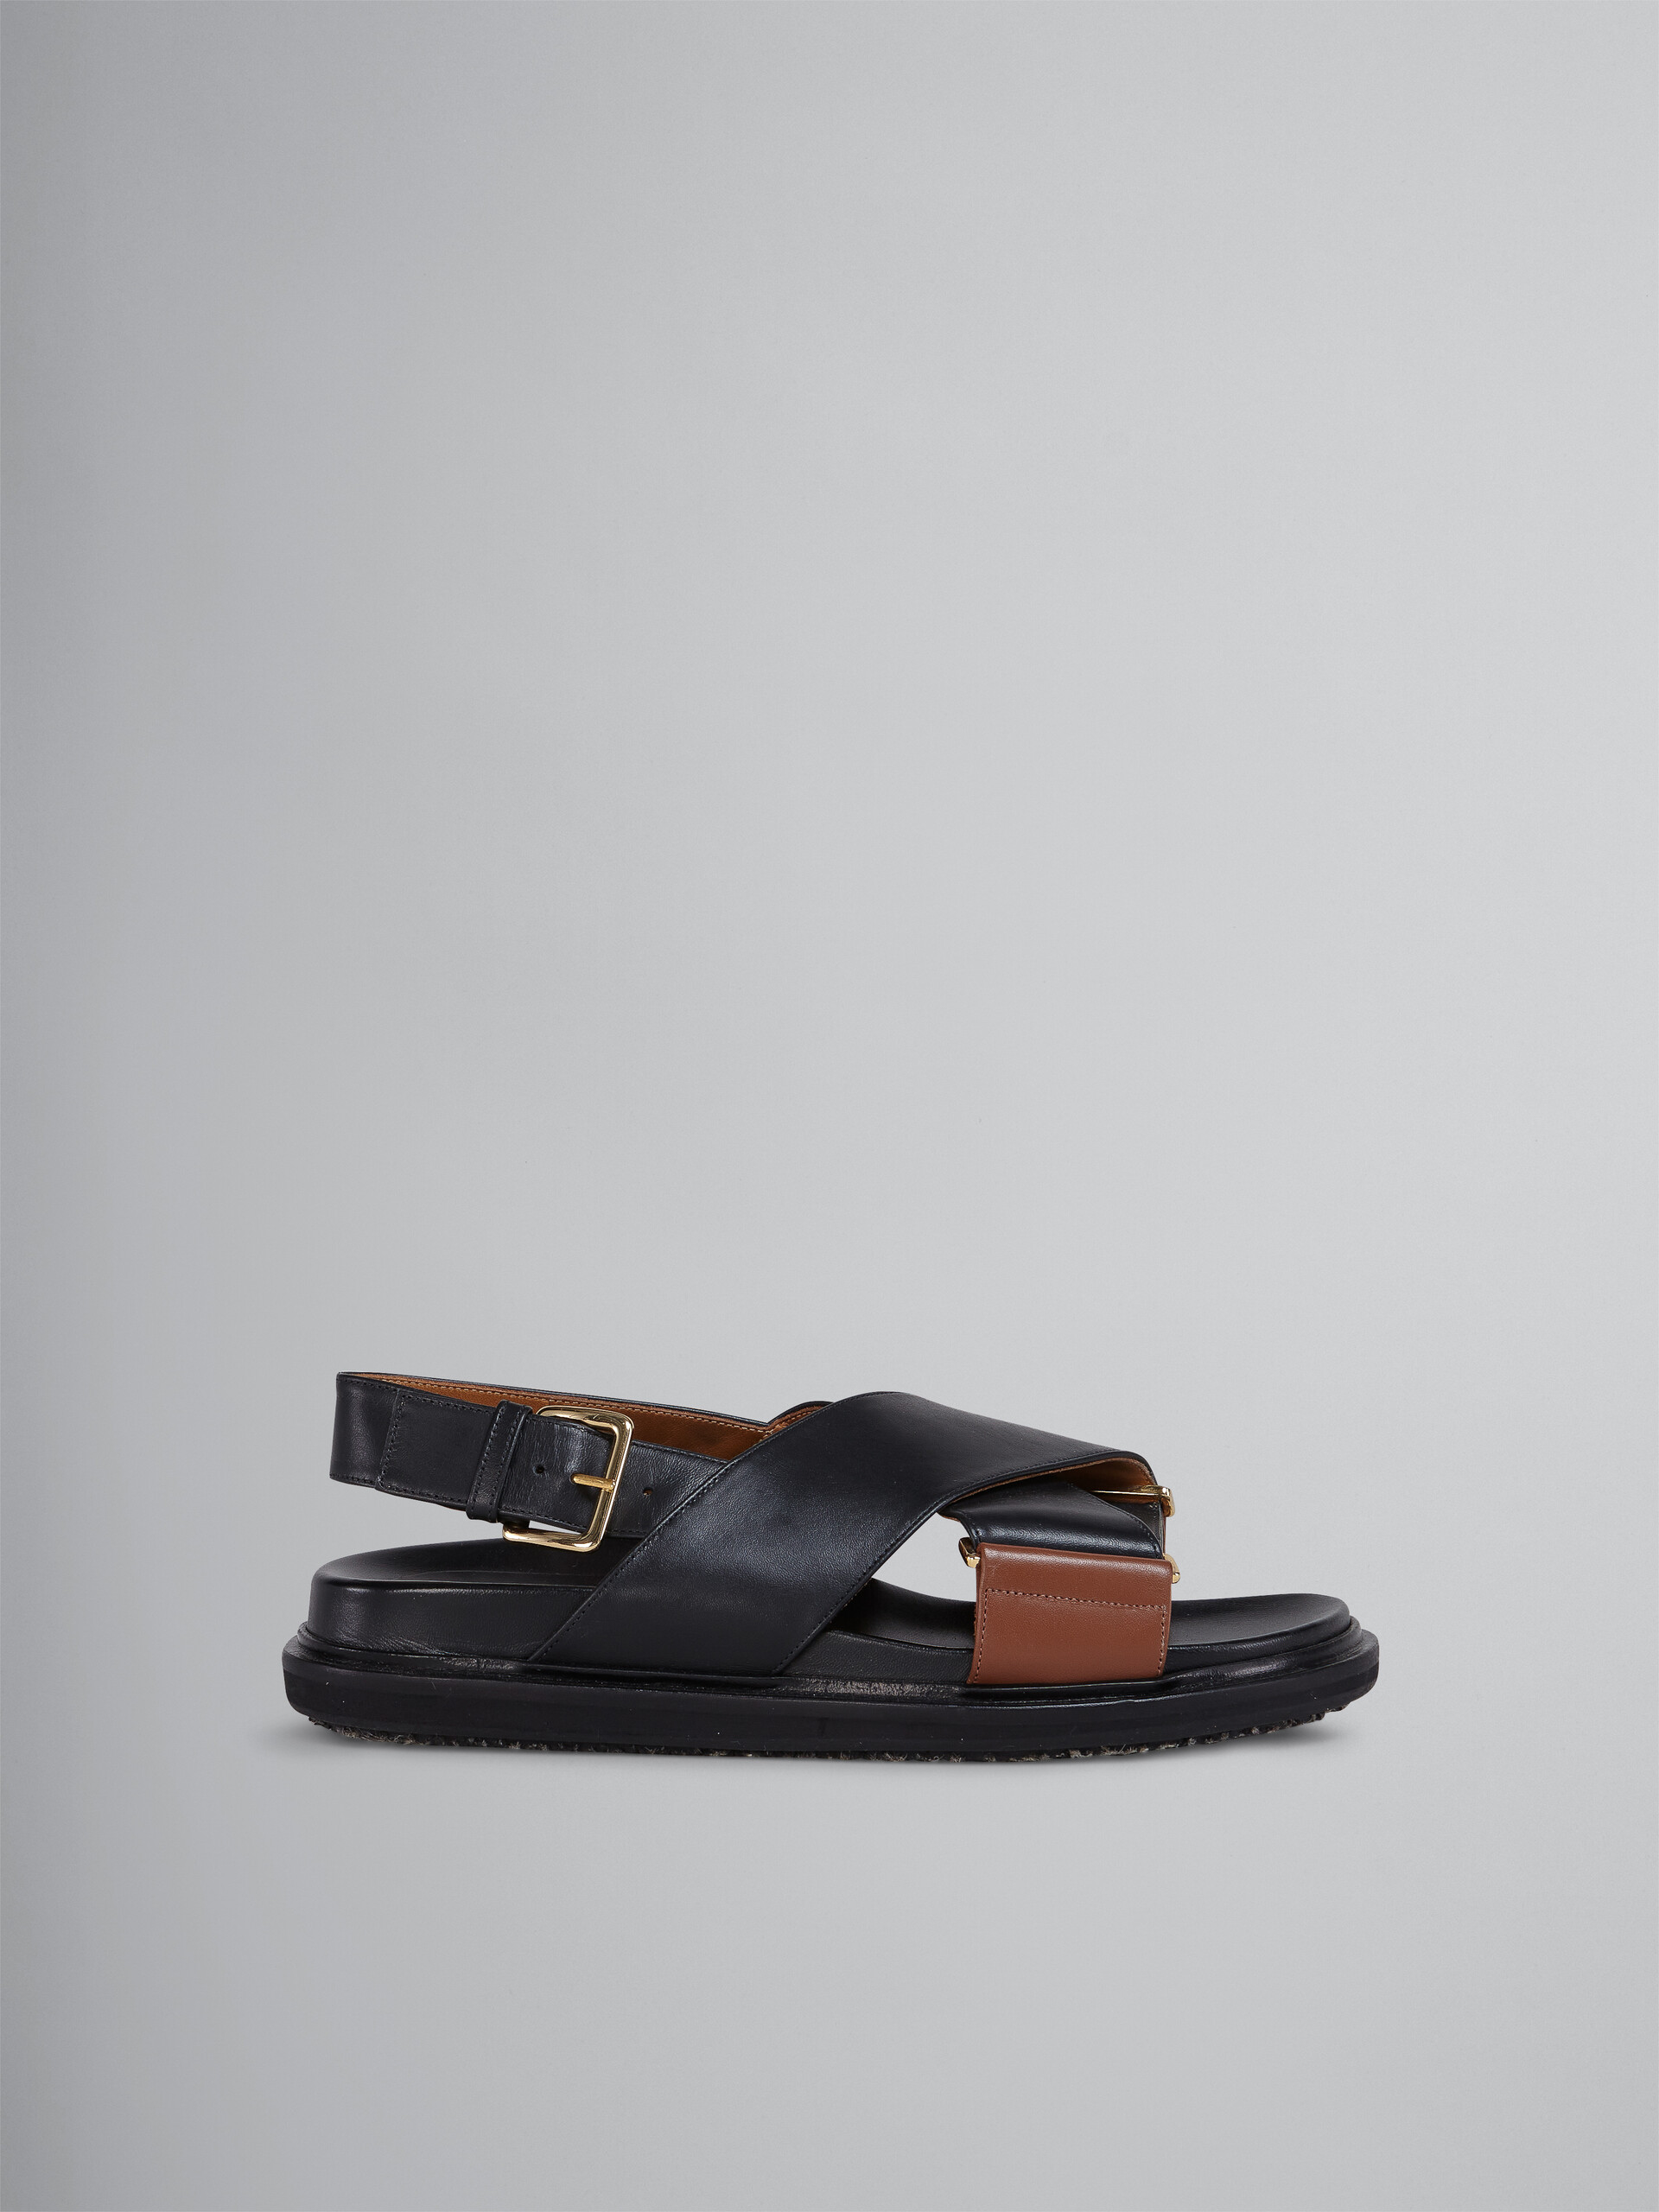 블랙 및 브라운 가죽 퍼스베트 - Sandals - Image 1